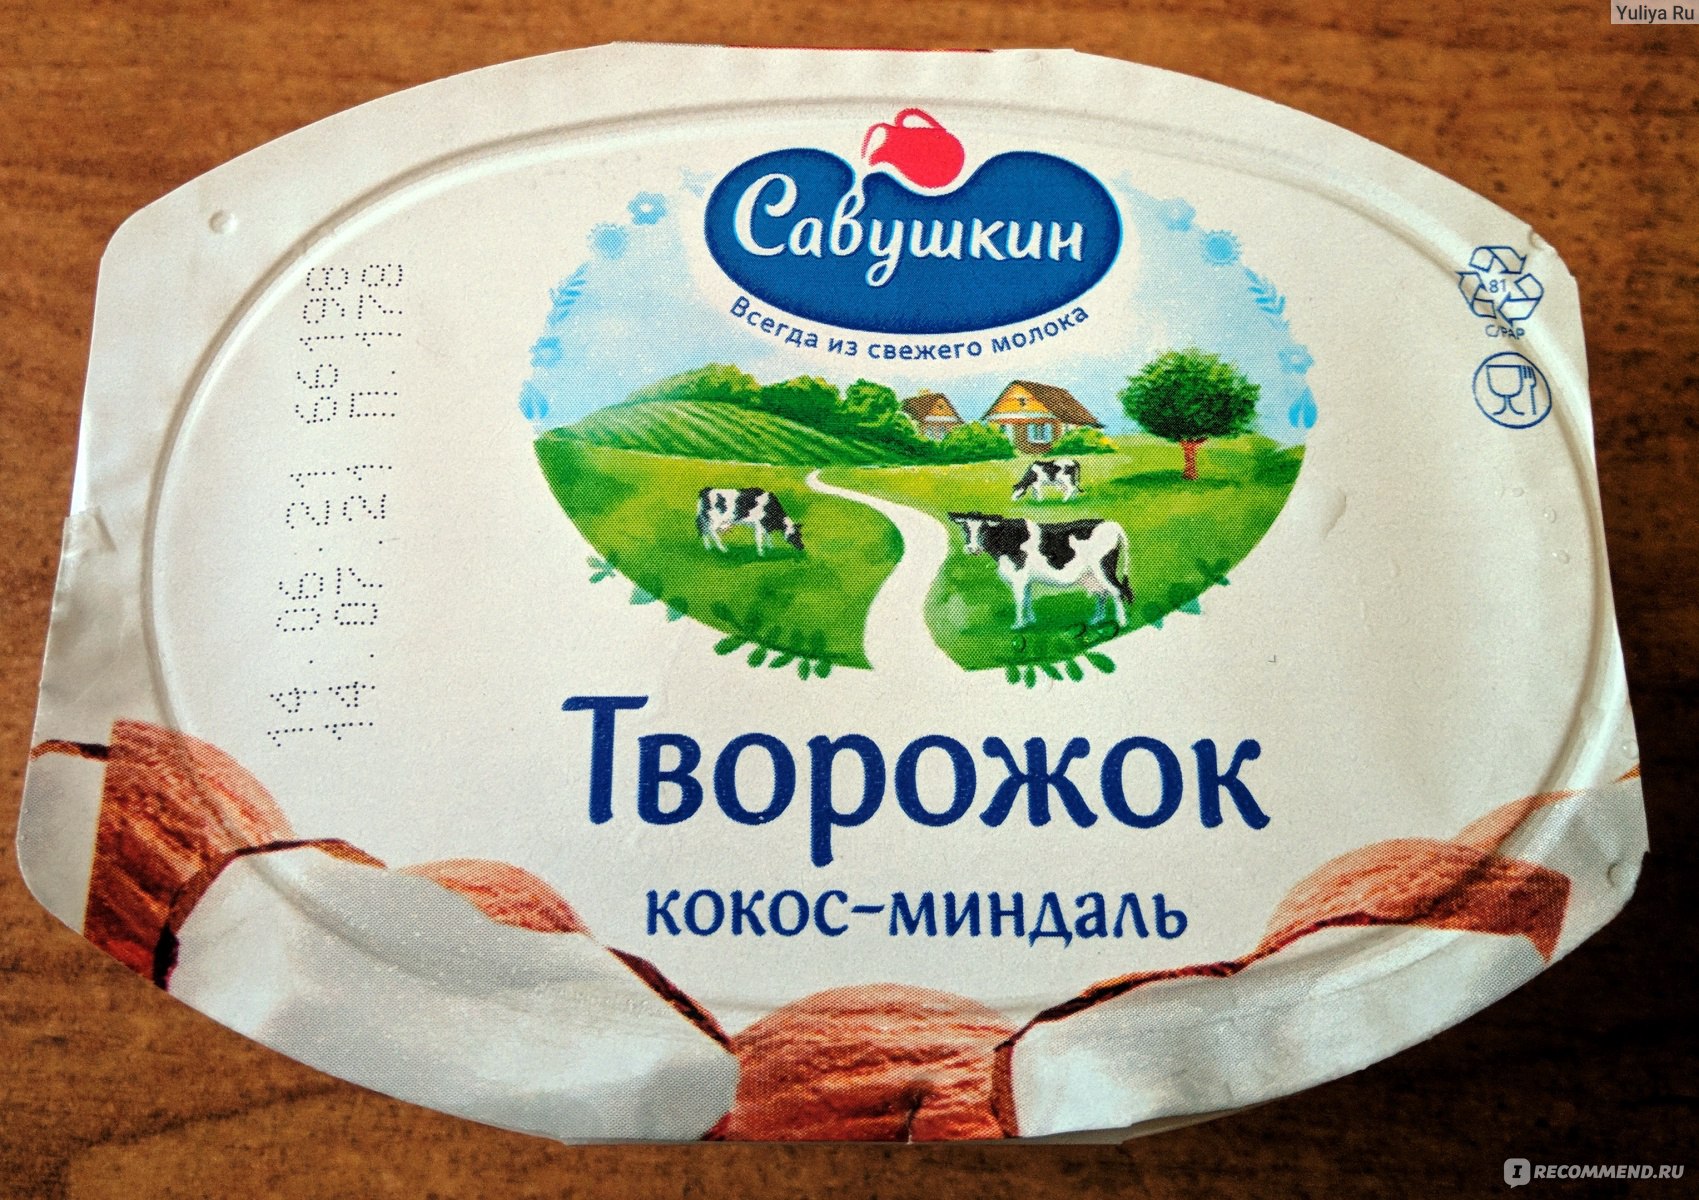 Творожная паста Савушкин Кокос-миндаль